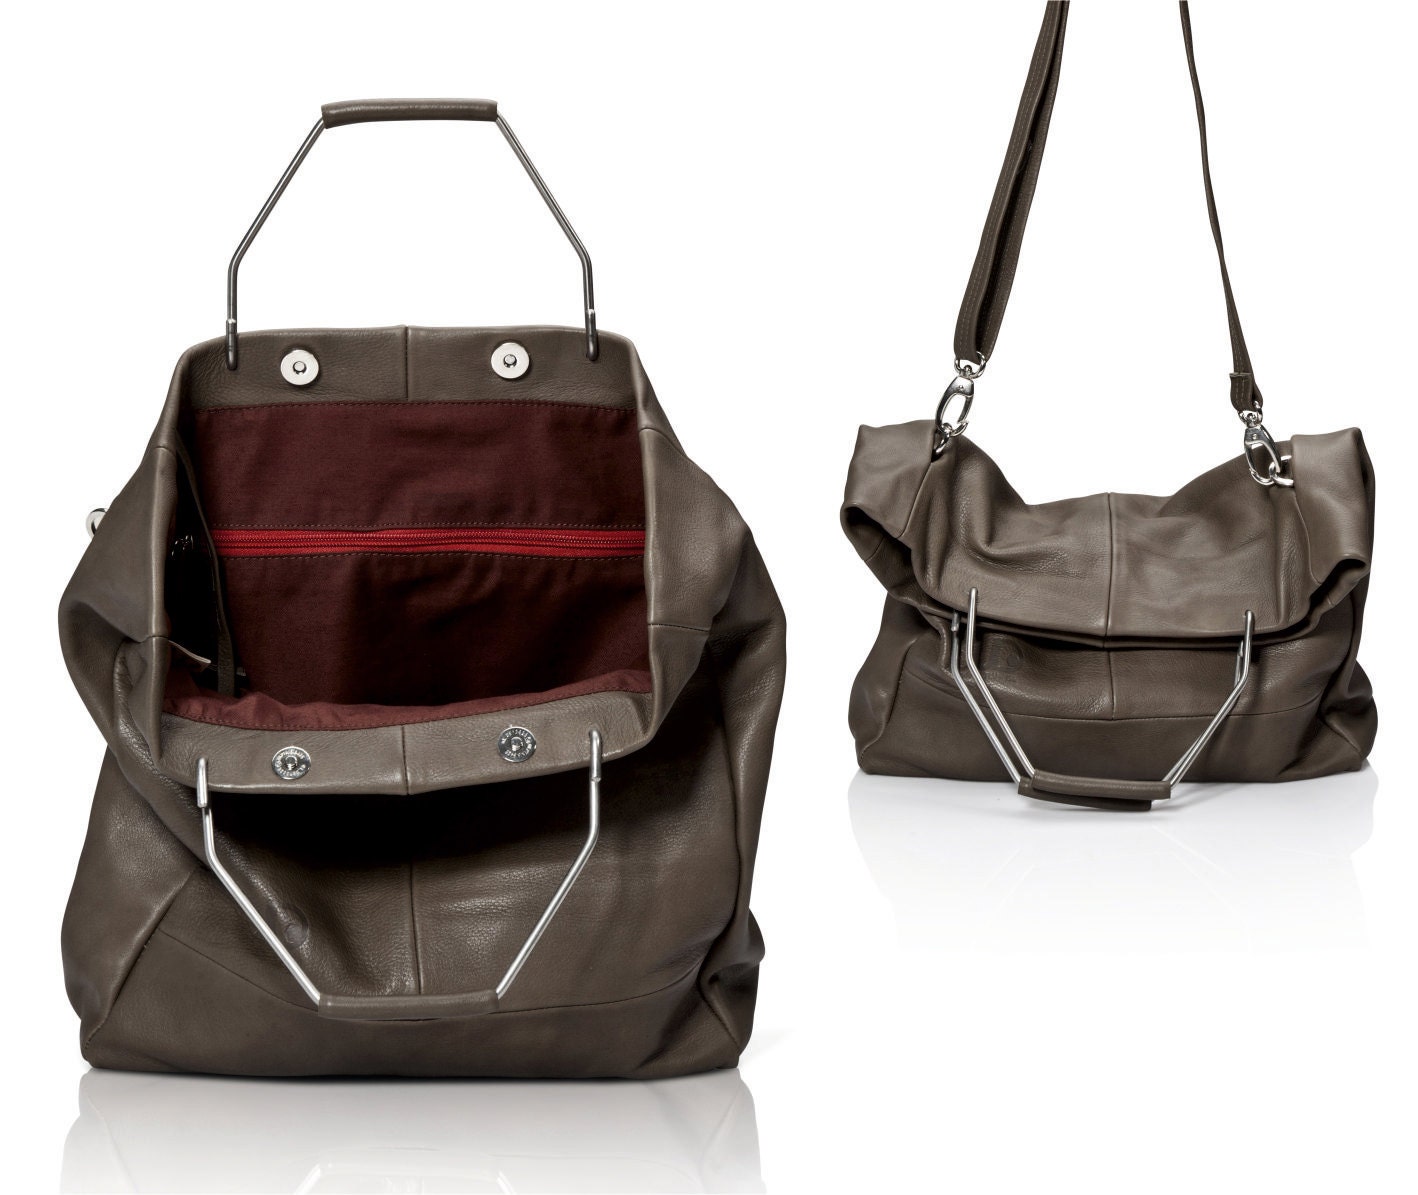 Gray leather bag leather handbag top handle bag SALE